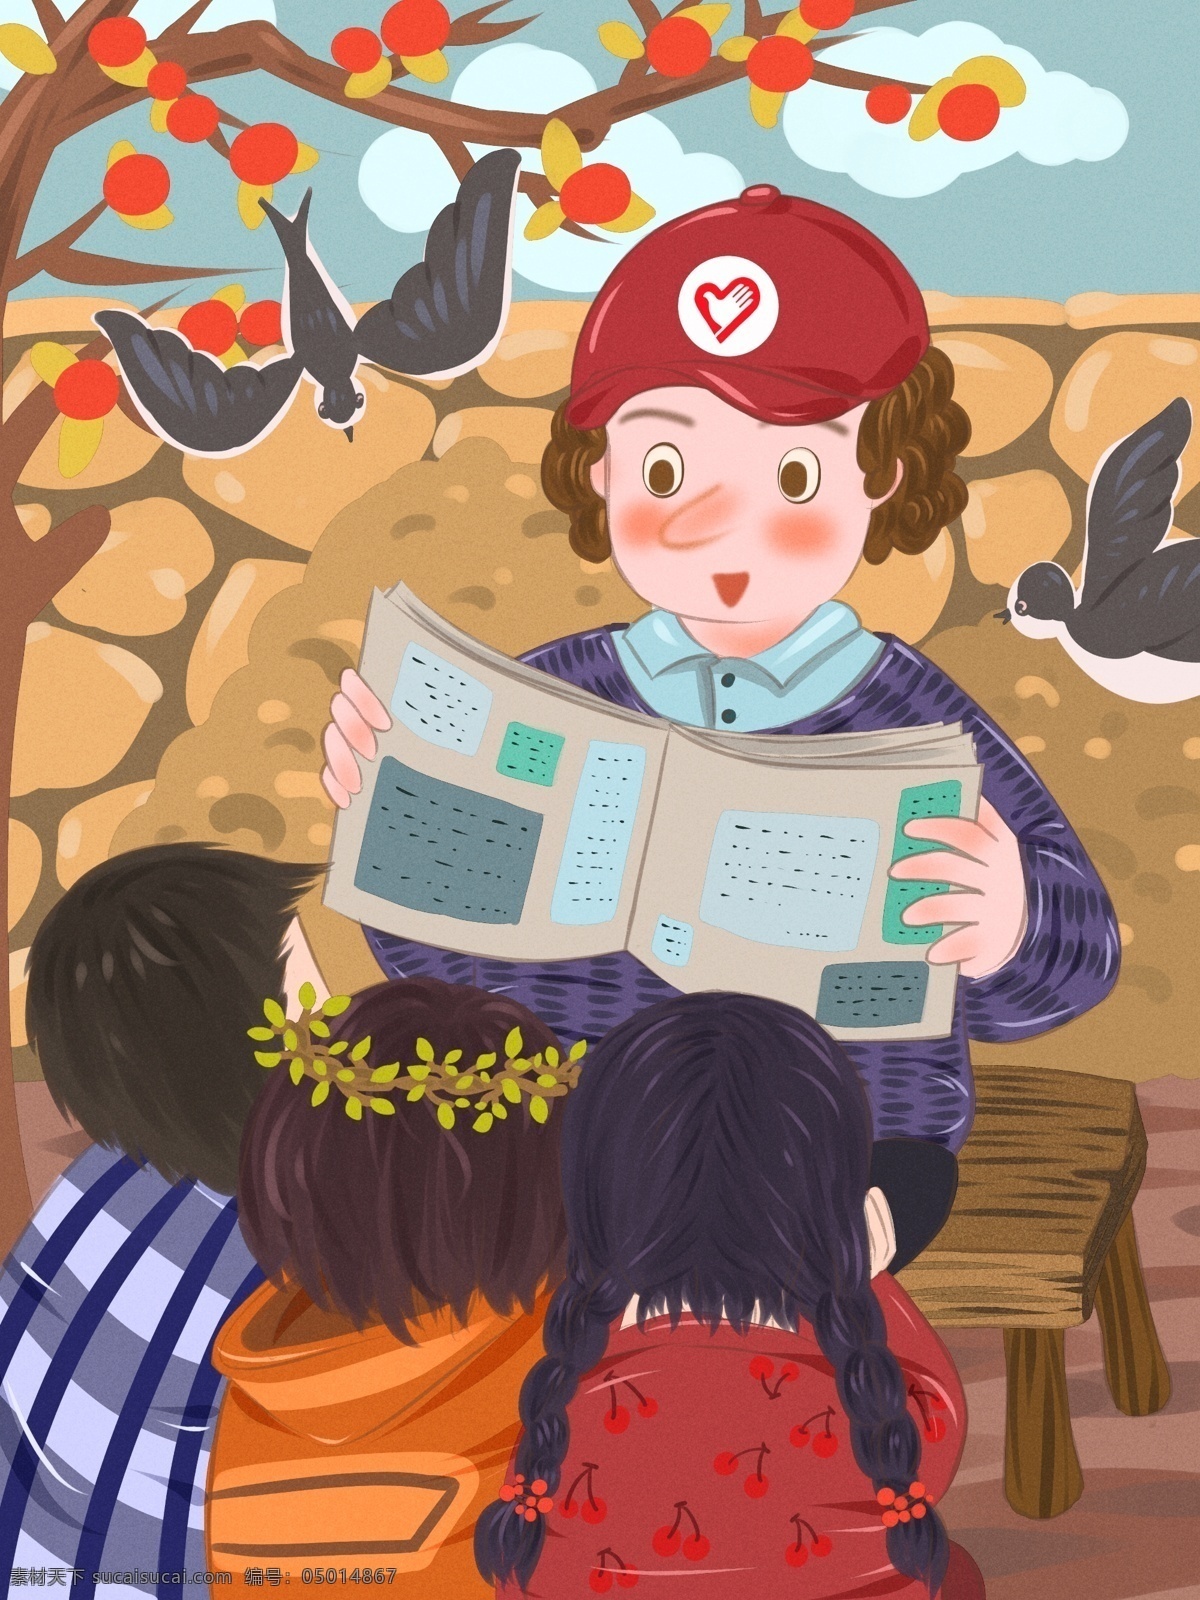 国际 志愿者 日志 愿者 教 留守 儿童 读书 学英语 孩子 农村 扁平 鸟儿 国际志愿者日 外国志愿者 书